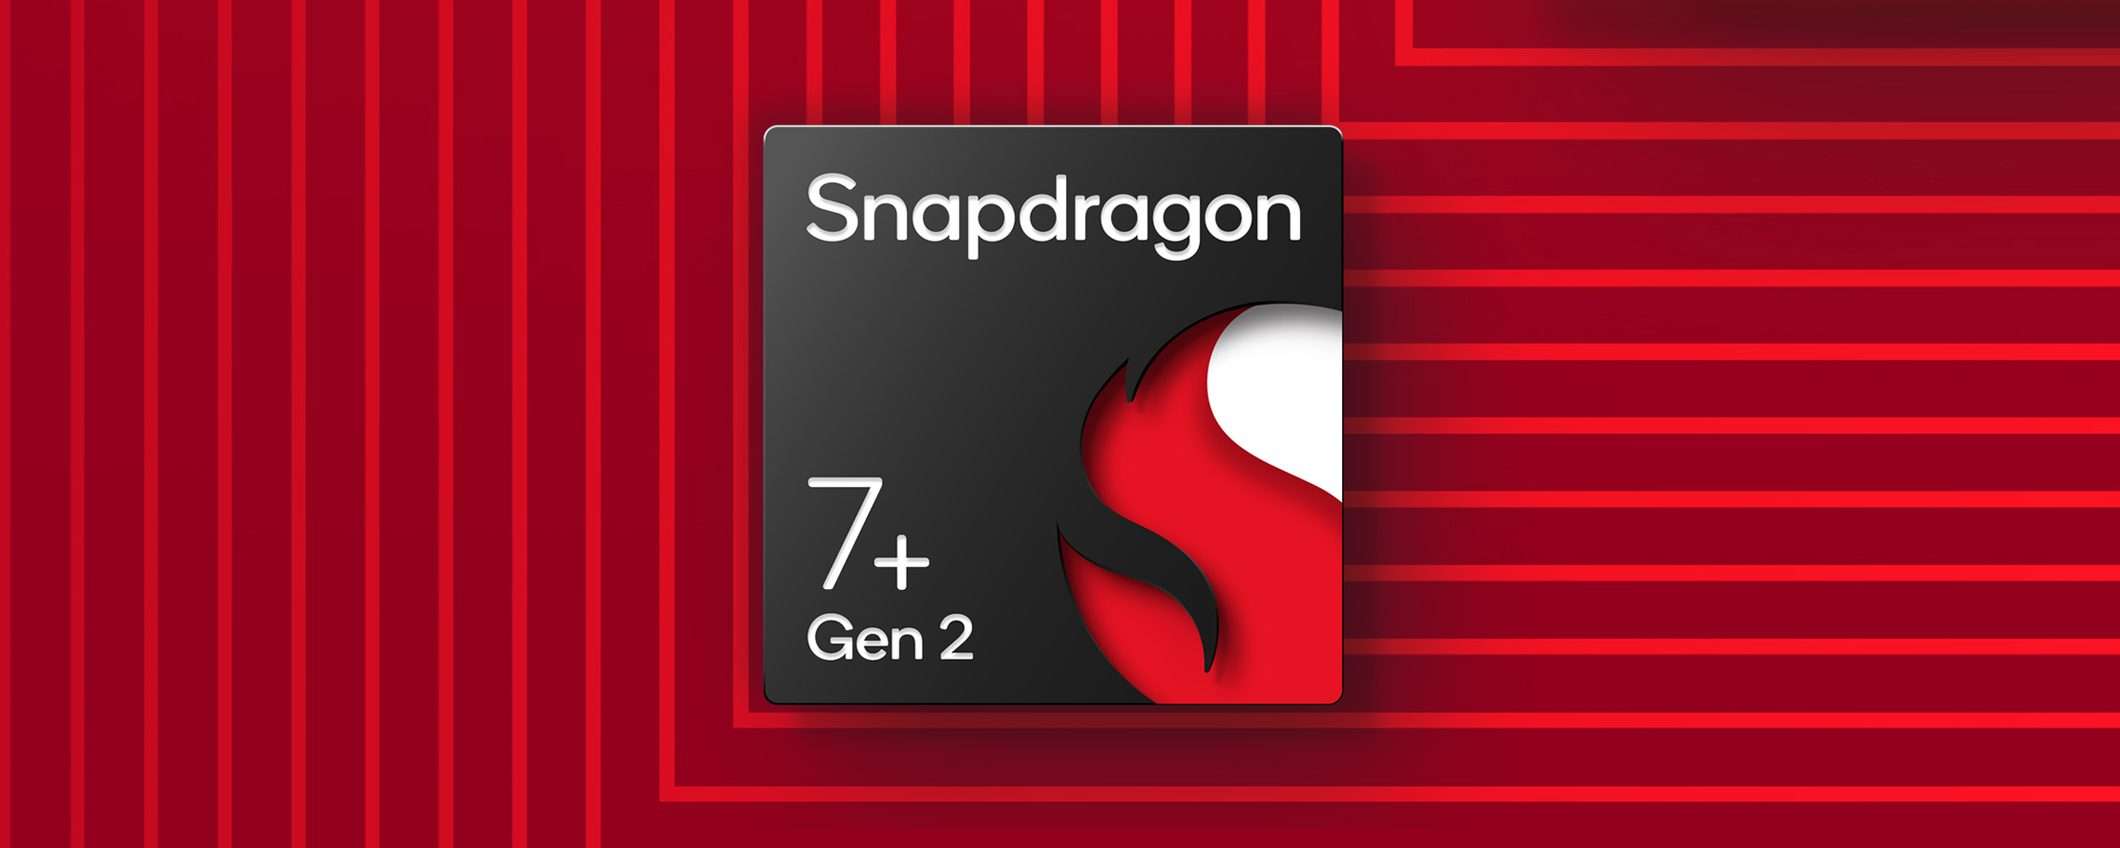 Qualcomm Snapdragon 7+ Gen 2 per un'esperienza premium